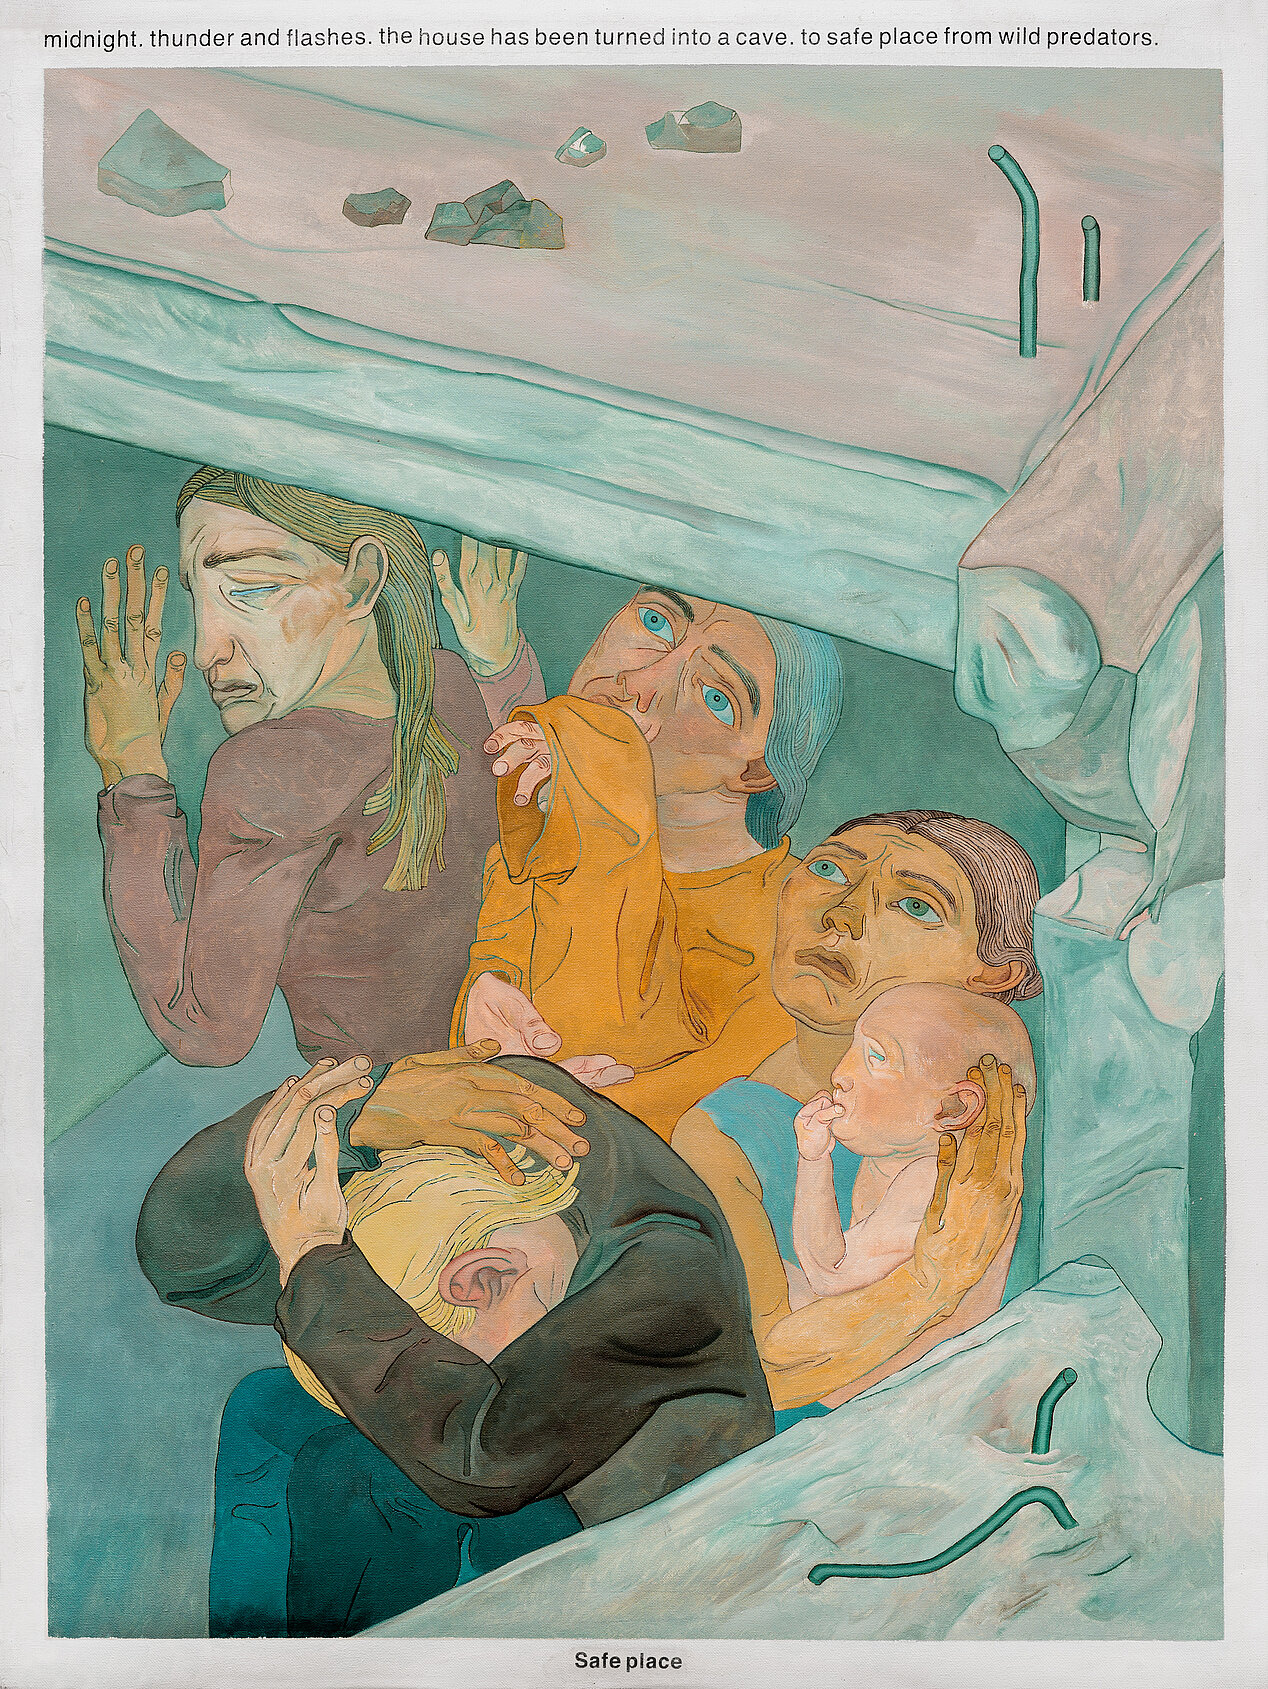 Das Bild zeigt fünf Menschen, die sich unter einer Fläche verstecken. Einer davon ist ein Baby. Die Menschen sehen erschrocken aus und scheinen sich von der Luftbombardierung schützen zu wollen. Das Bild gehört zur Führung im Kunstmuseum Stuttgart, gefolgt von der Podiumsdiskussion im ifa am 06. Juli 2023. 